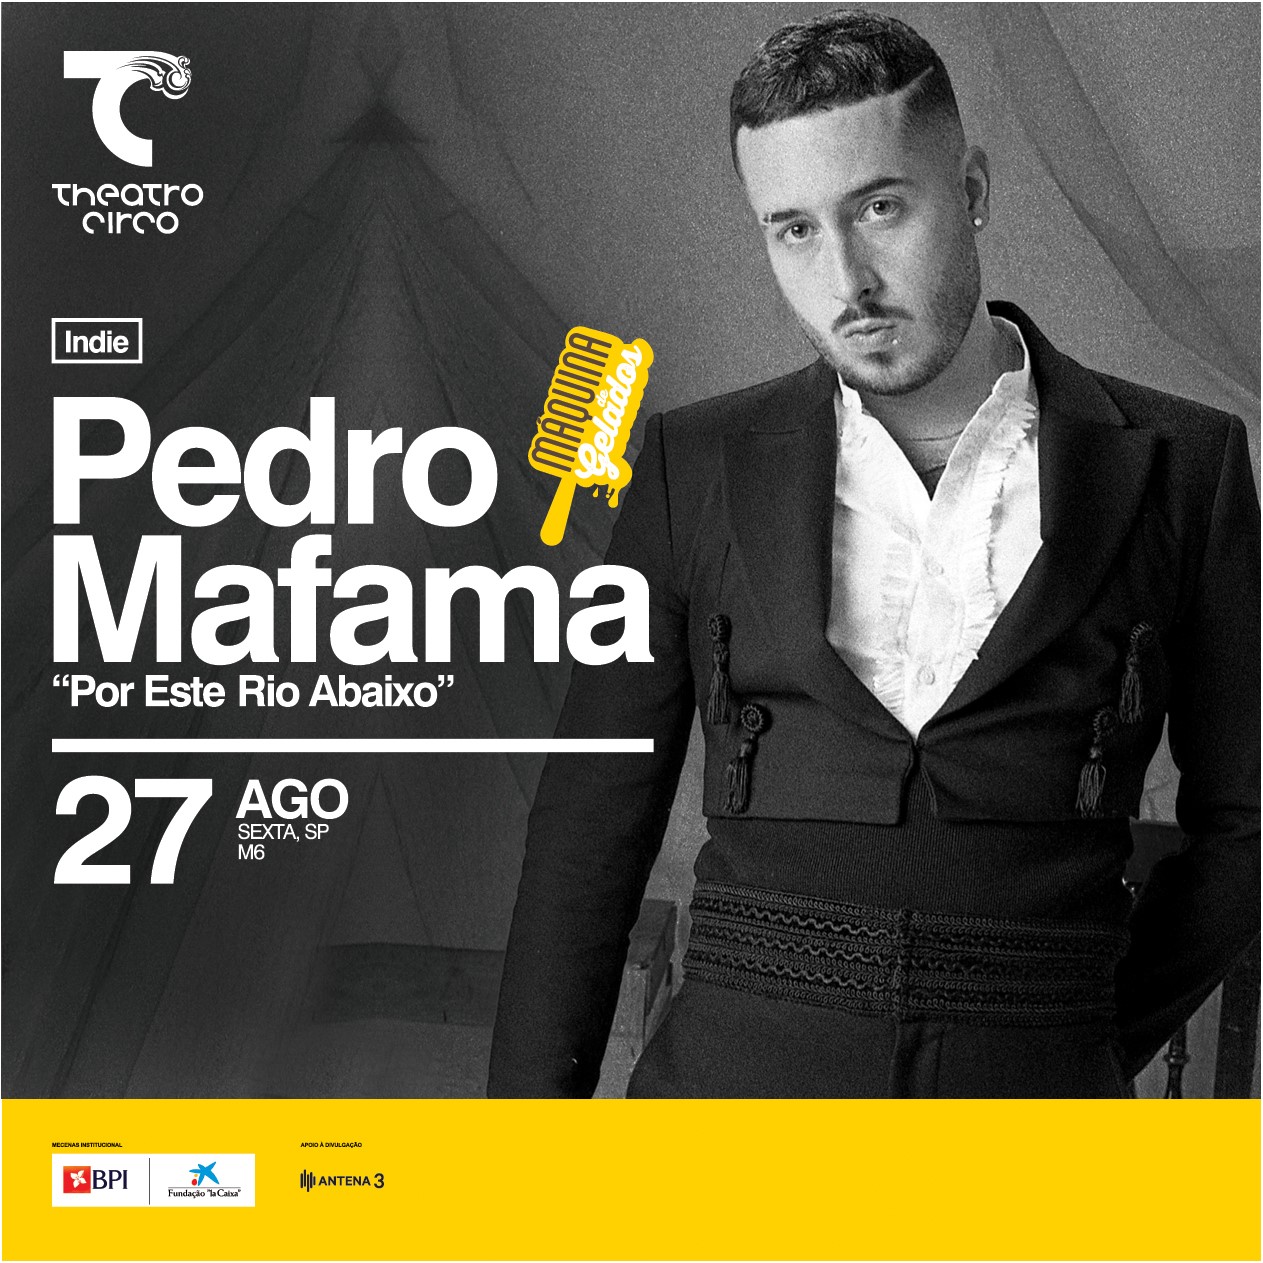 PEDRO MAFAMA - MÁQUINA DE GELADOS | Theatro Circo